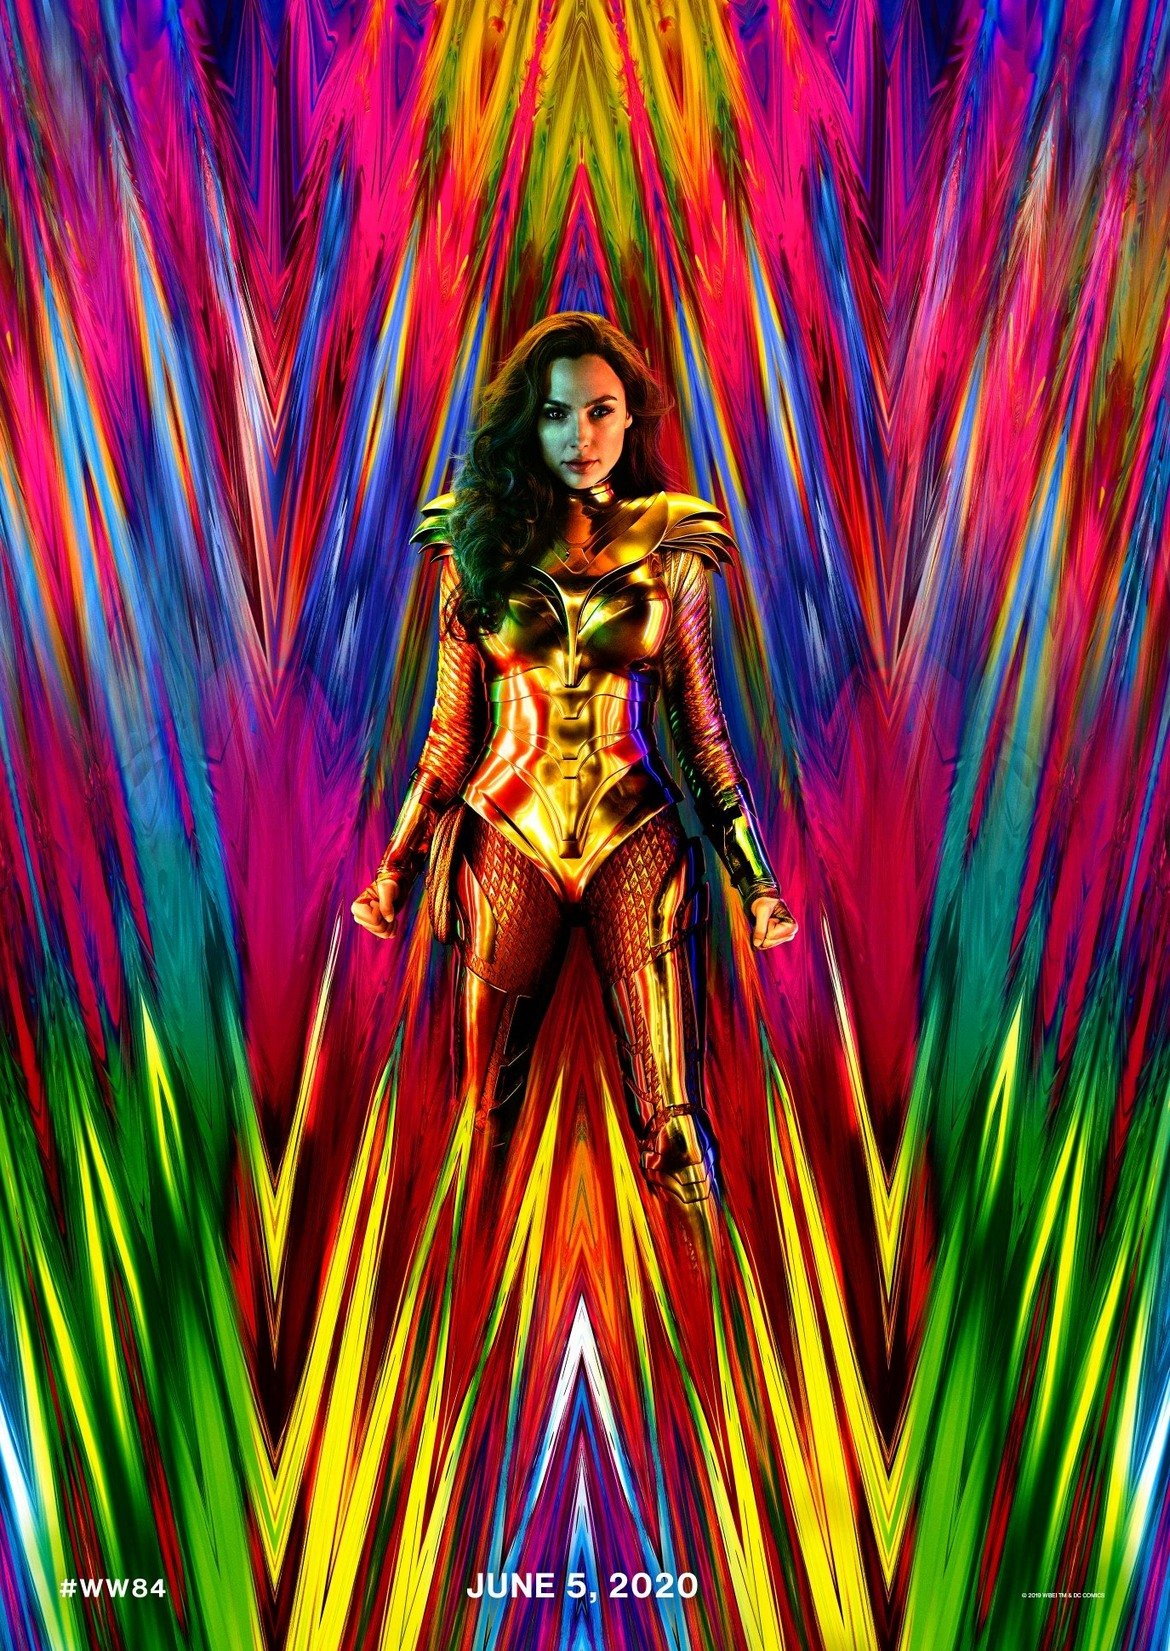 Wonder Woman 1984

Премиера: юни 2020 г. 

"Жената-чудо" на Пати Дженкинс беше един от хитовете на филмовата 2017 г. и се превърна в най-силния касов успех на продукция от линията на DC Comics, чийто главен герой не е Батман или Супермен. Детайлите около сюжета засега са оскъдни, но се знае, че продължението с Гал Гадот се прехвърля напред във времето на Студената война, за да влезе в сблъсък със смъртоносната си противнича "Чита". 